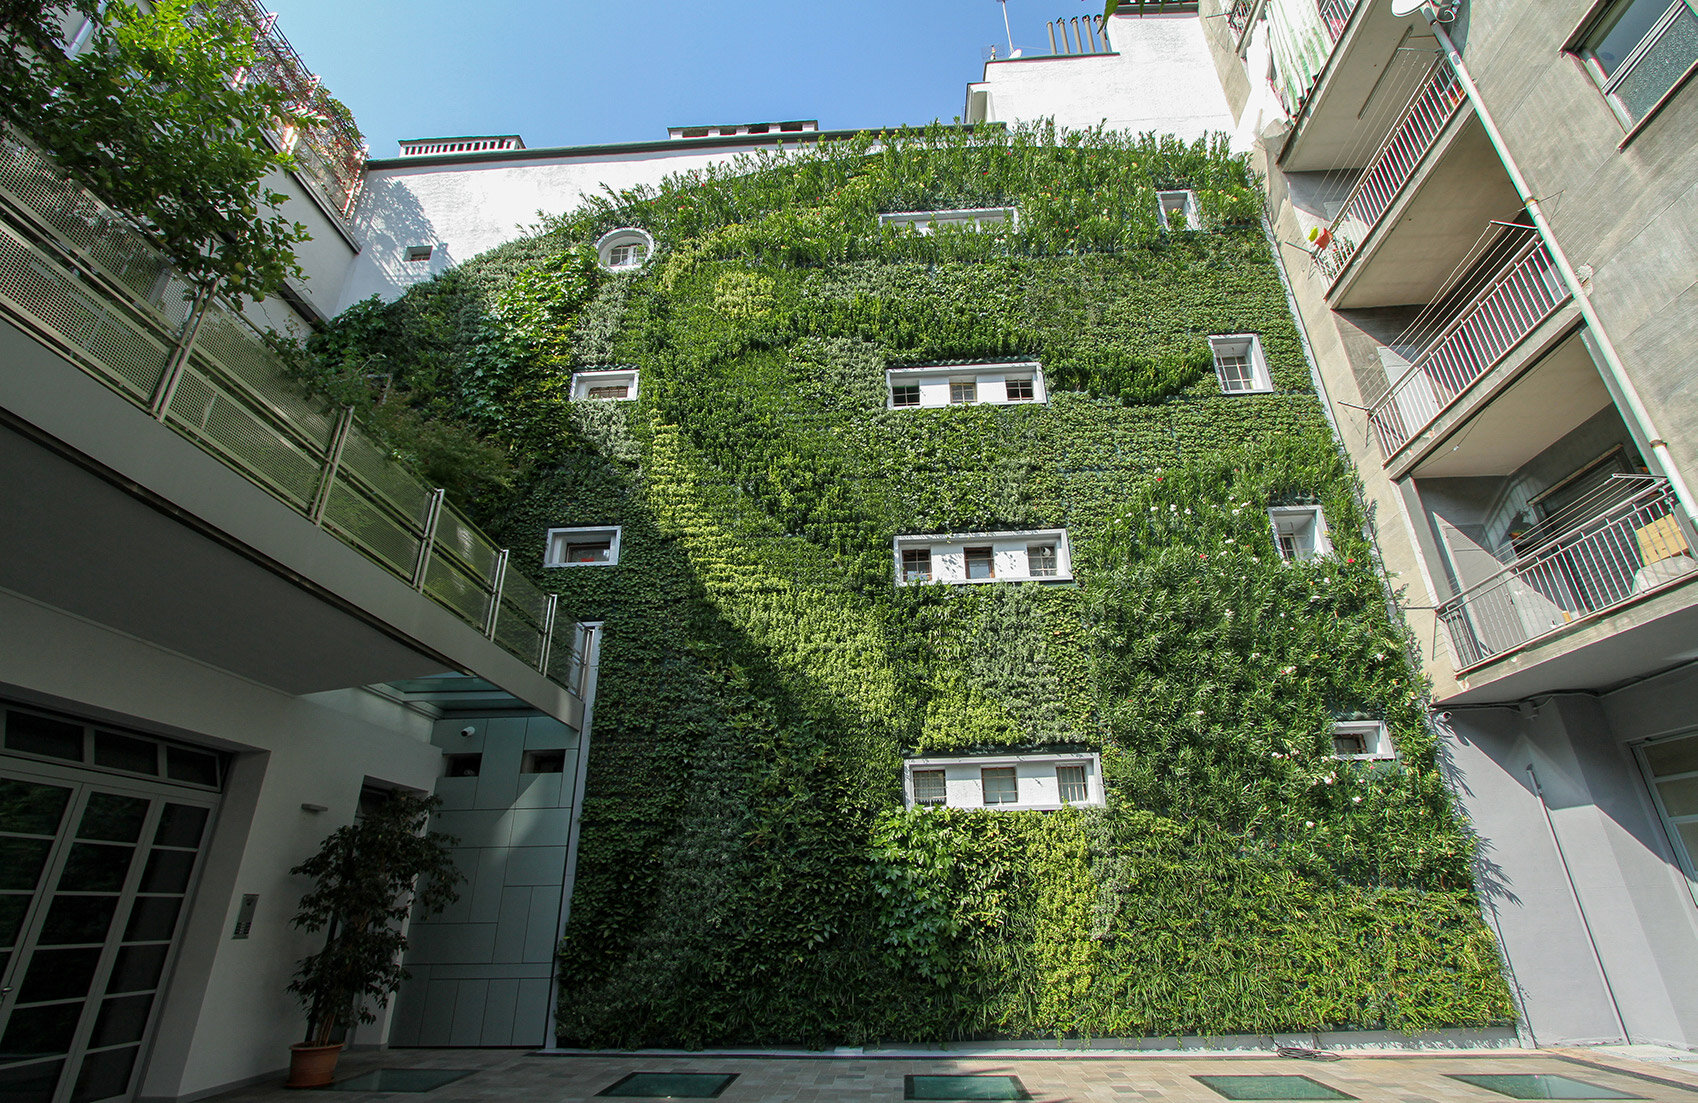 jolanda-garden-vertical-wall-green-sundar-italia-005.jpg